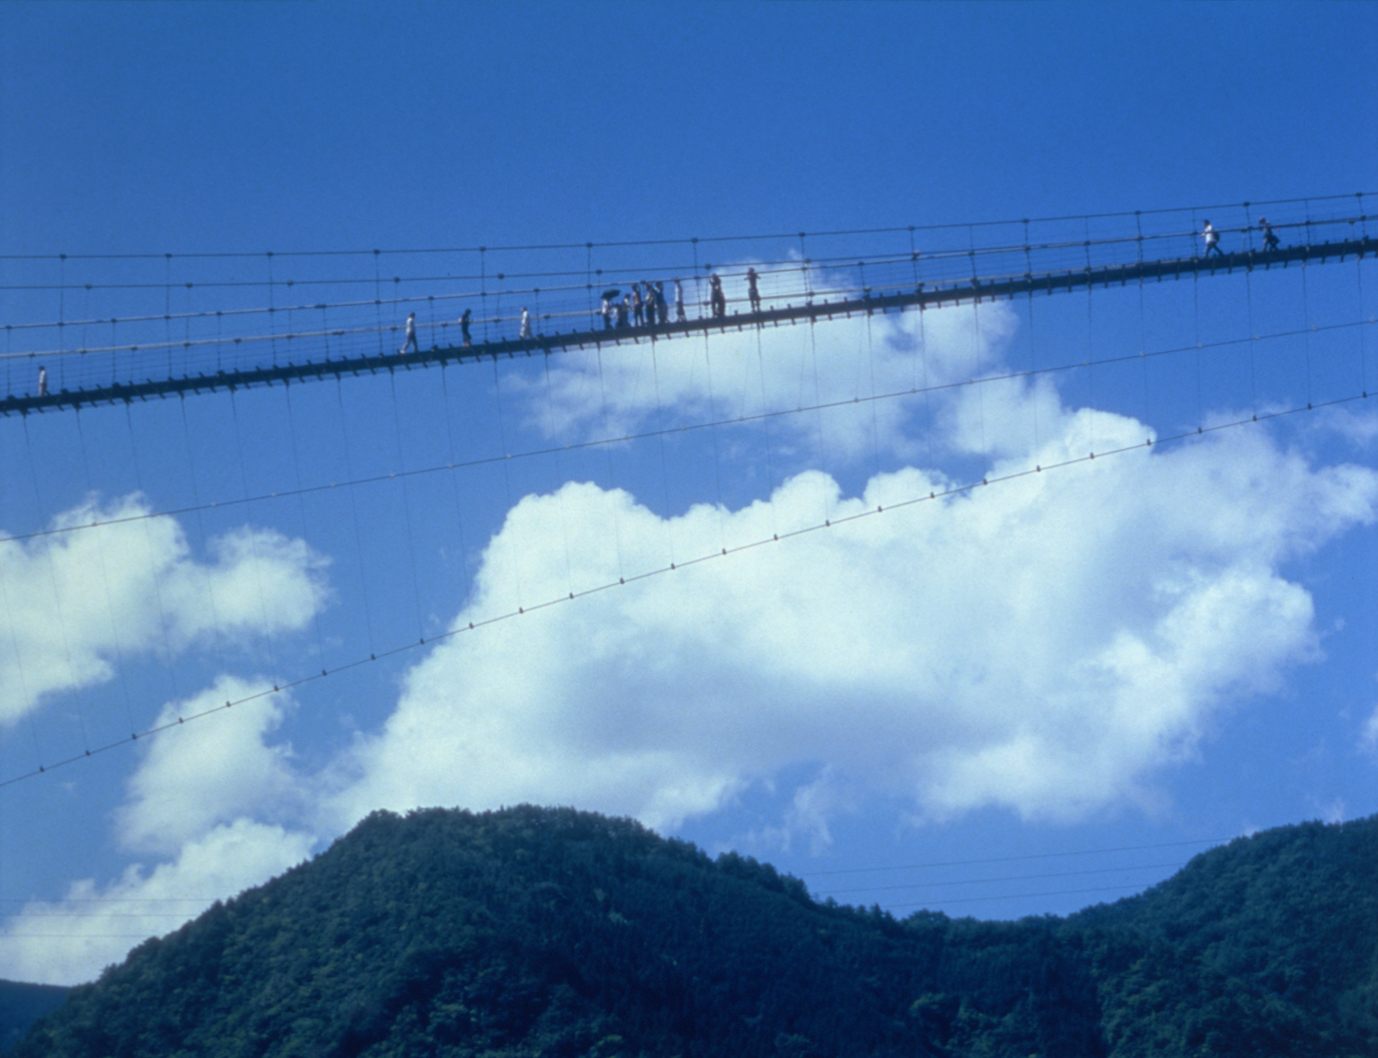 “谷瀨吊橋”是與篠原地區相鄰的十津川村最長的吊橋之一。